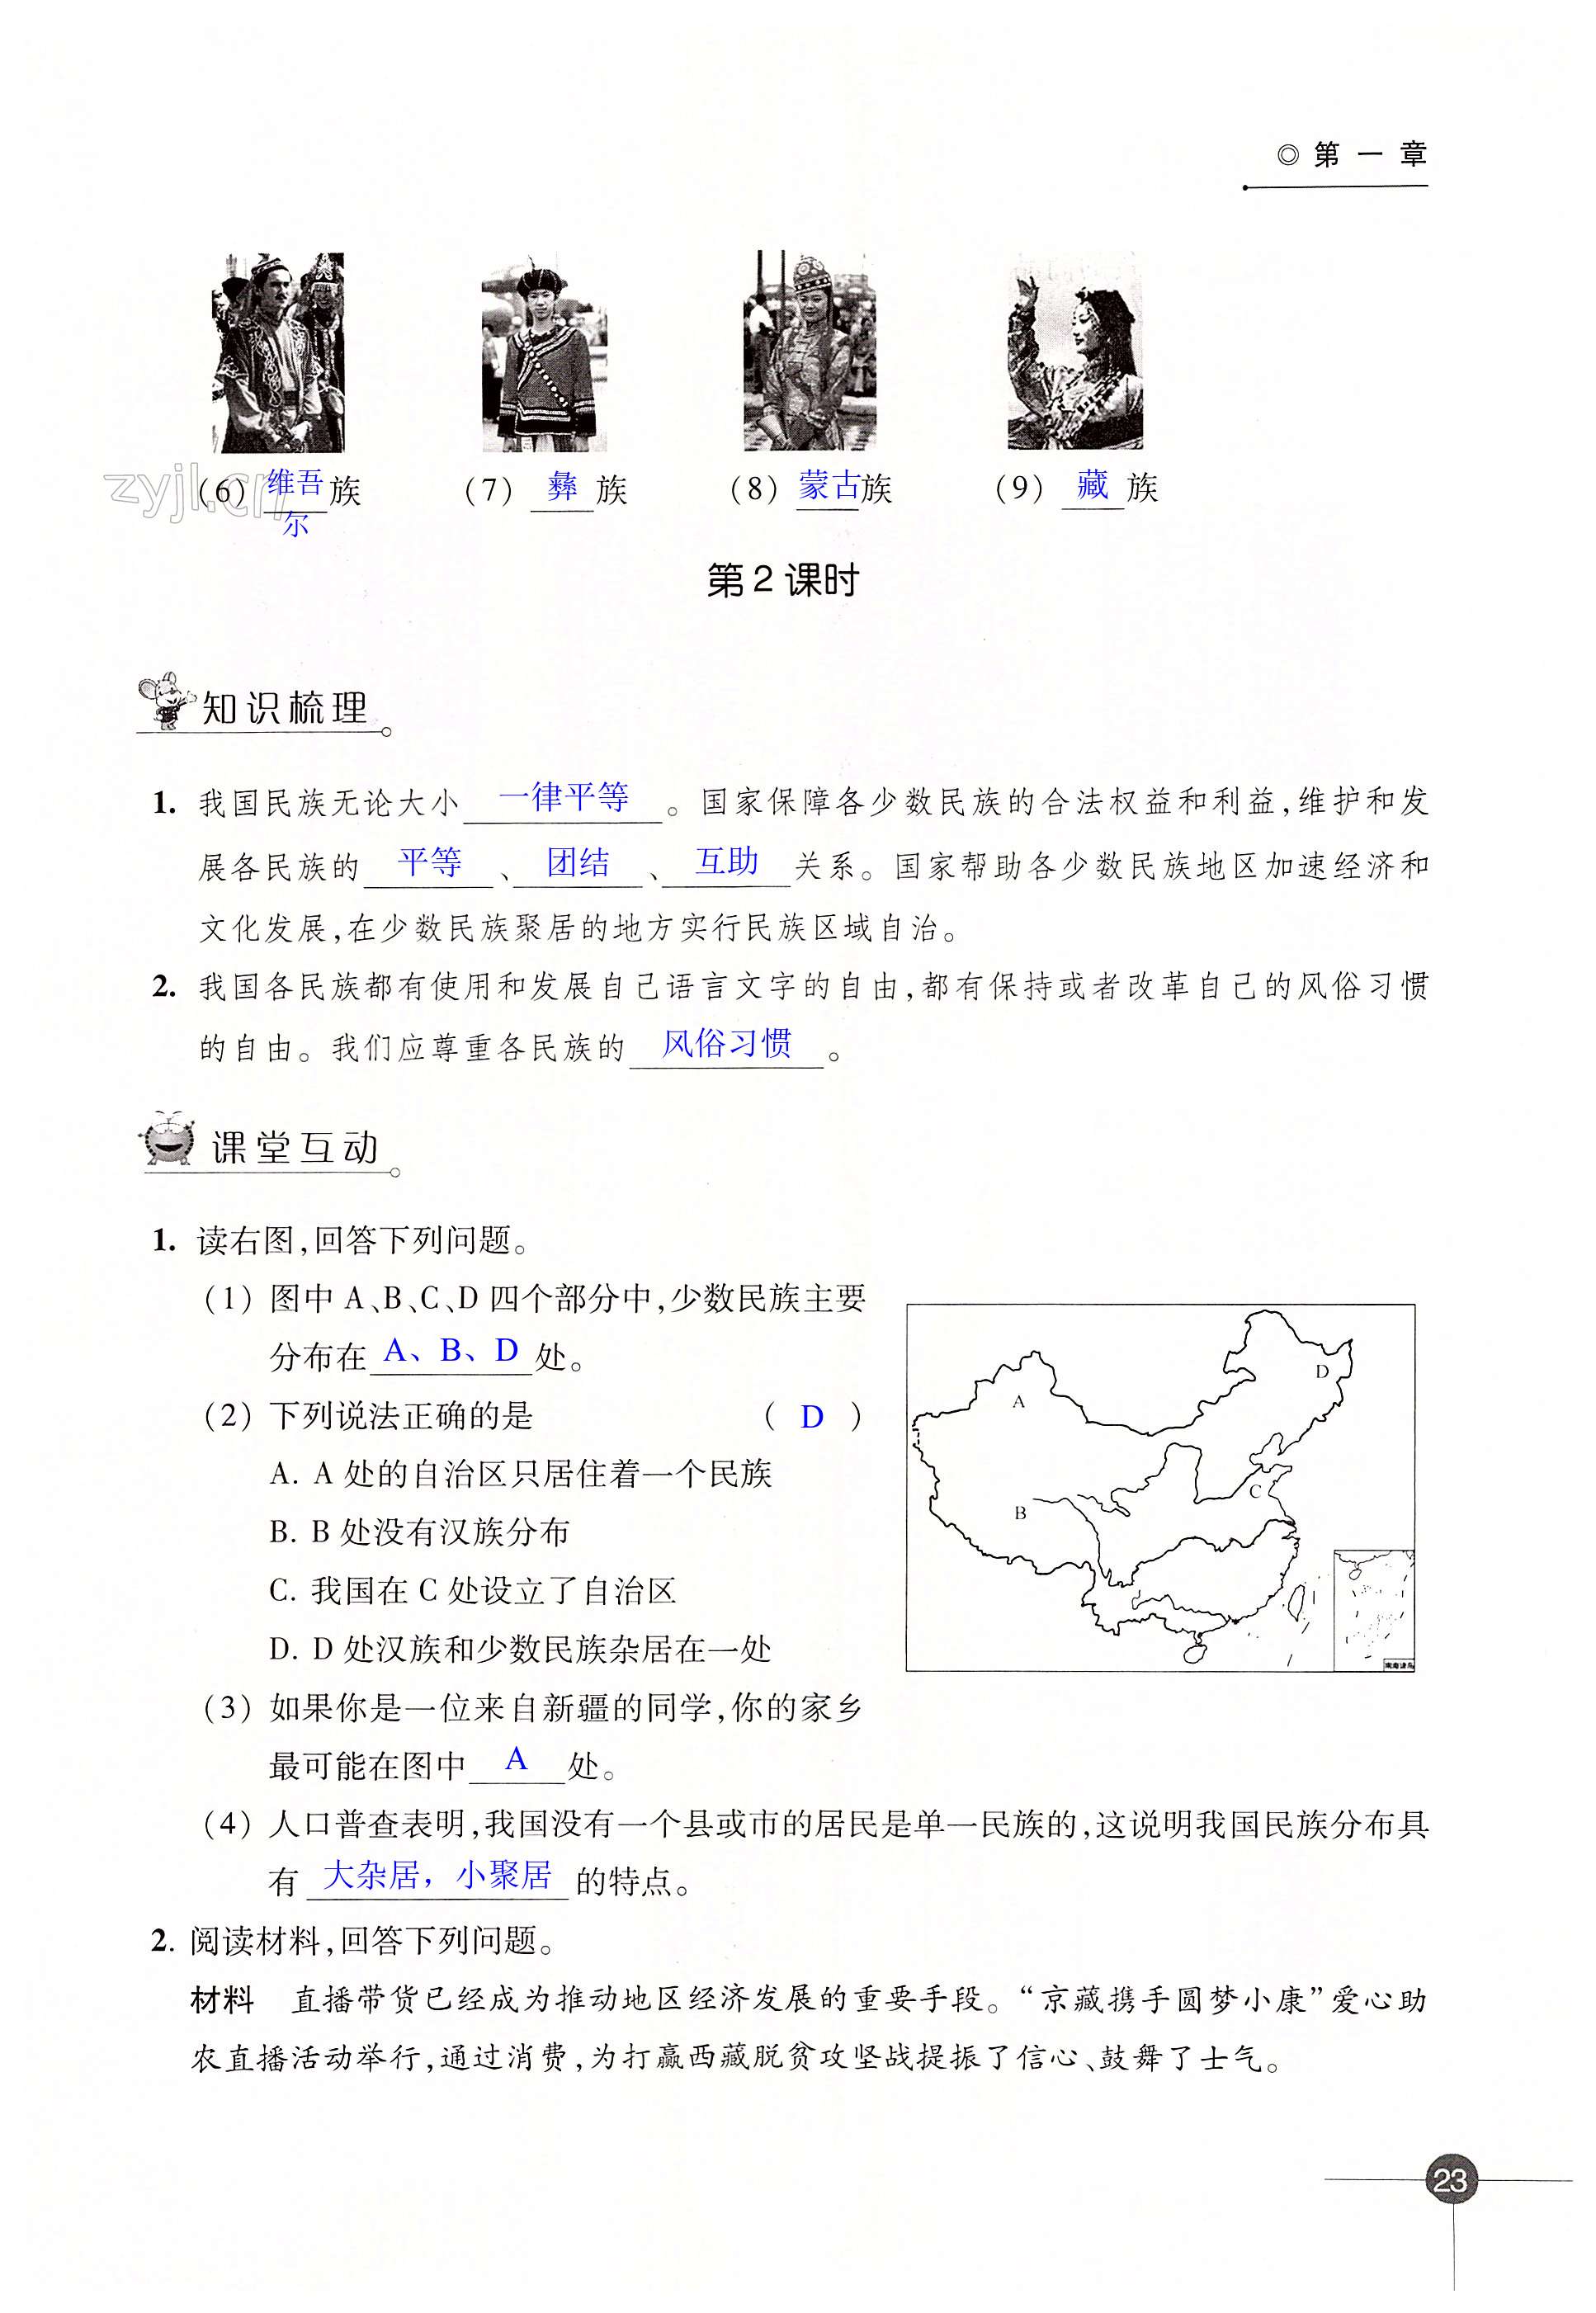 第一章 中国的疆域与人口 - 第23页